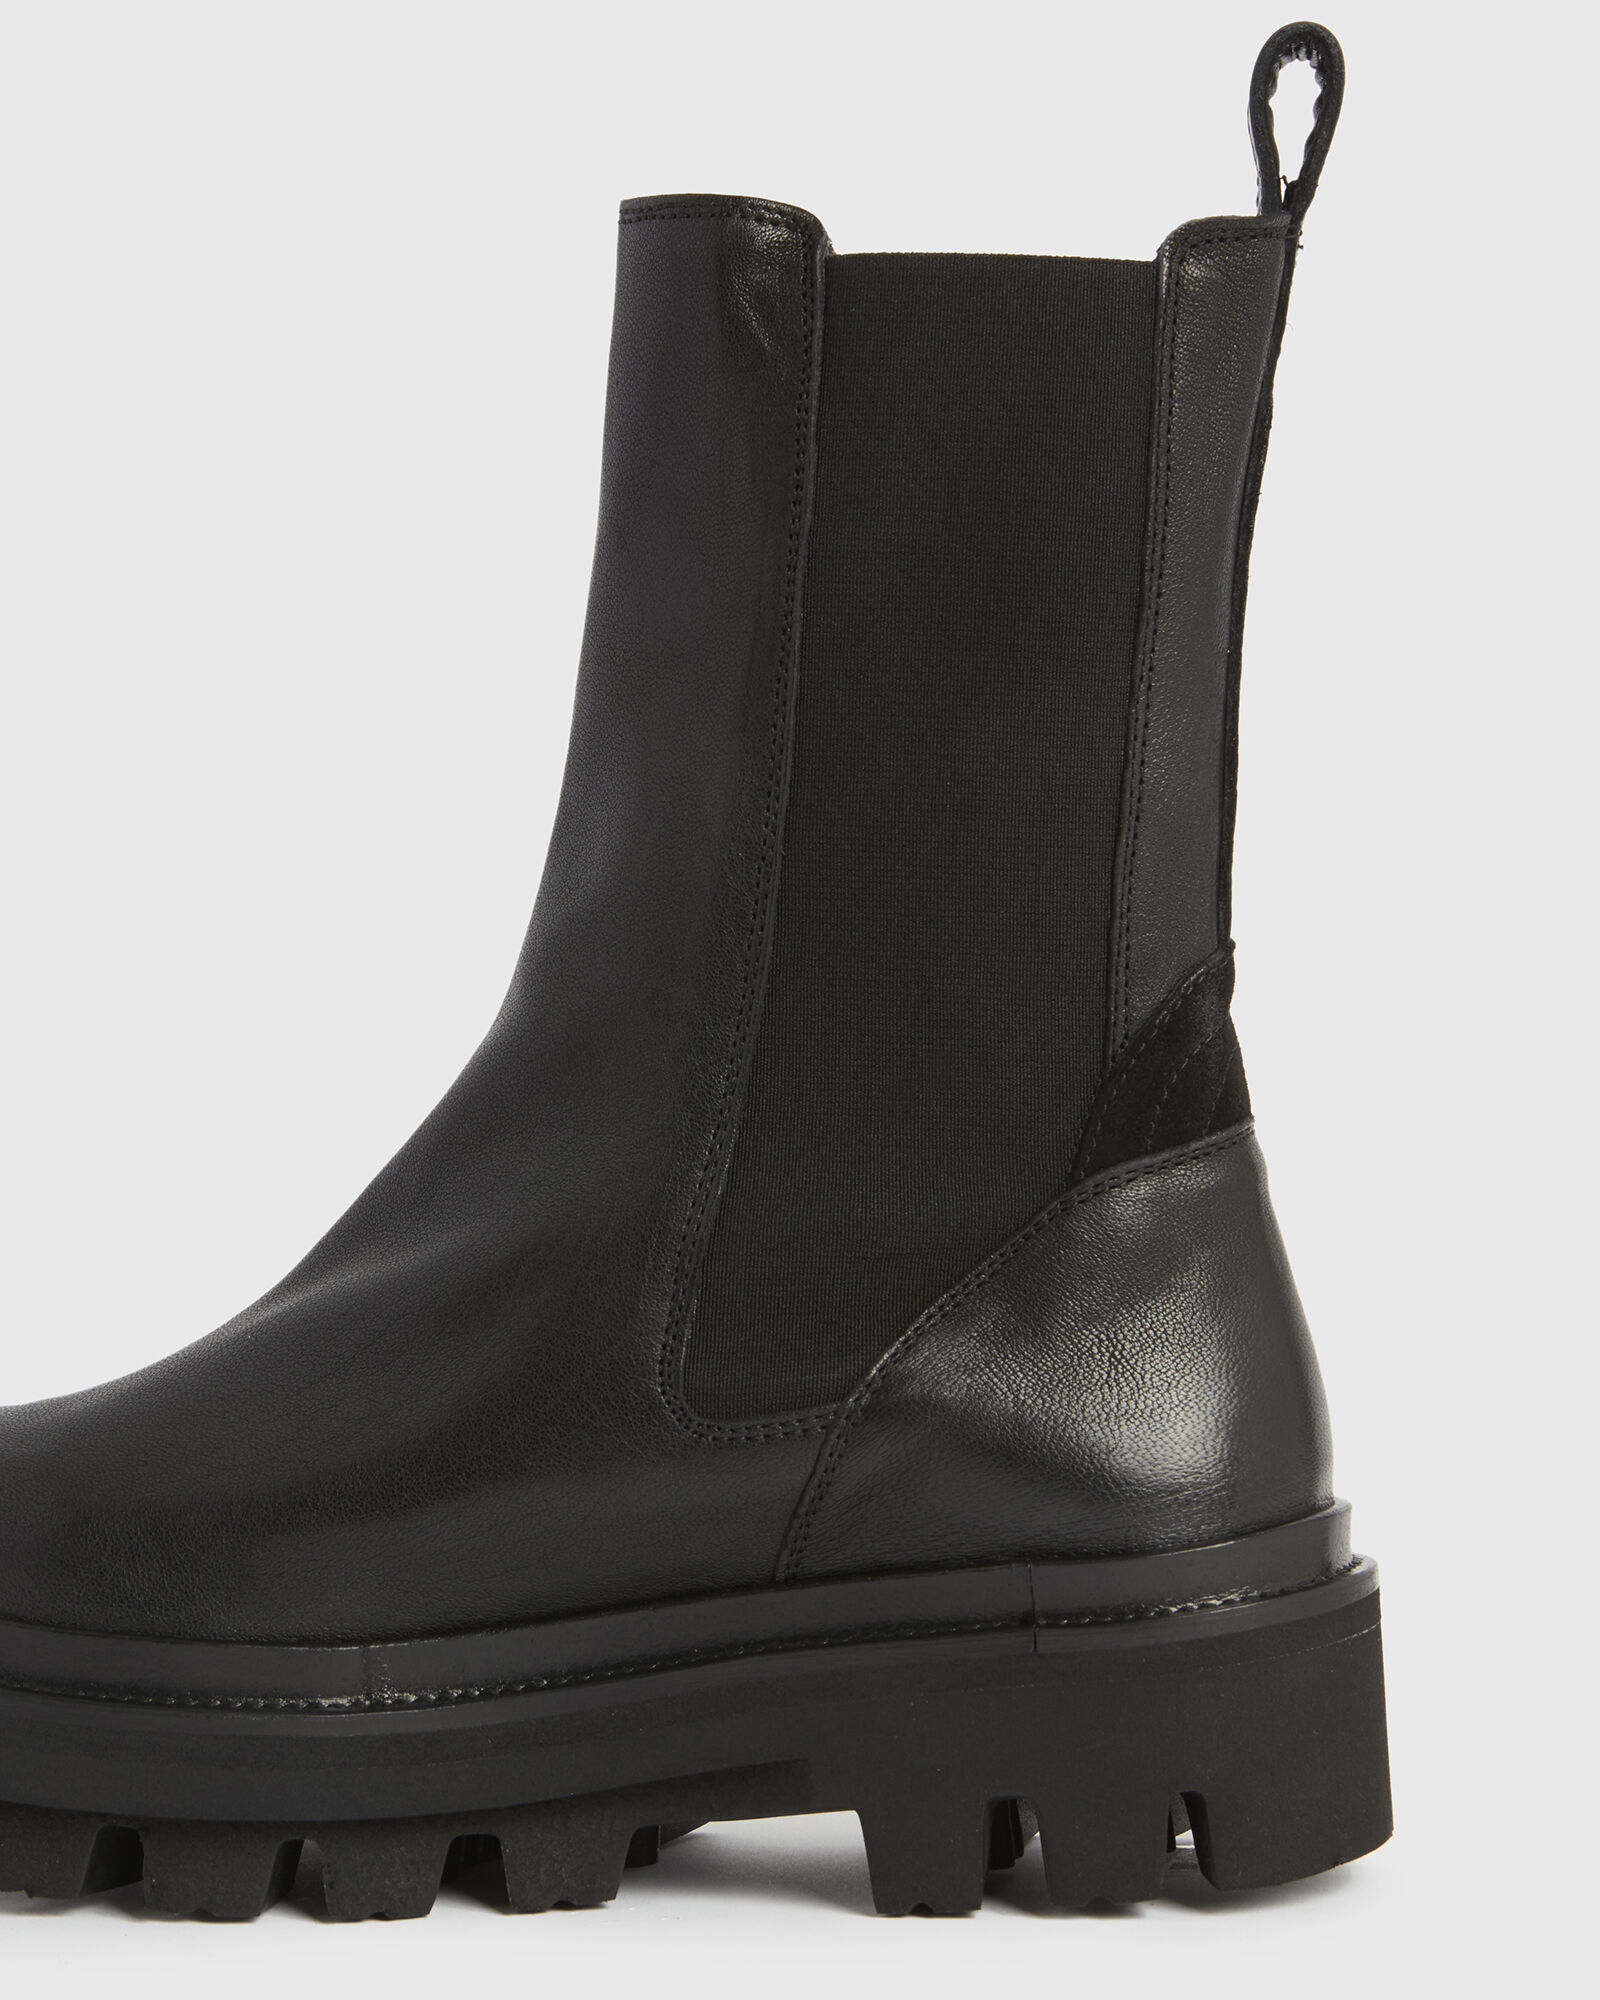 Billie Leather Boots Black | ALLSAINTS US